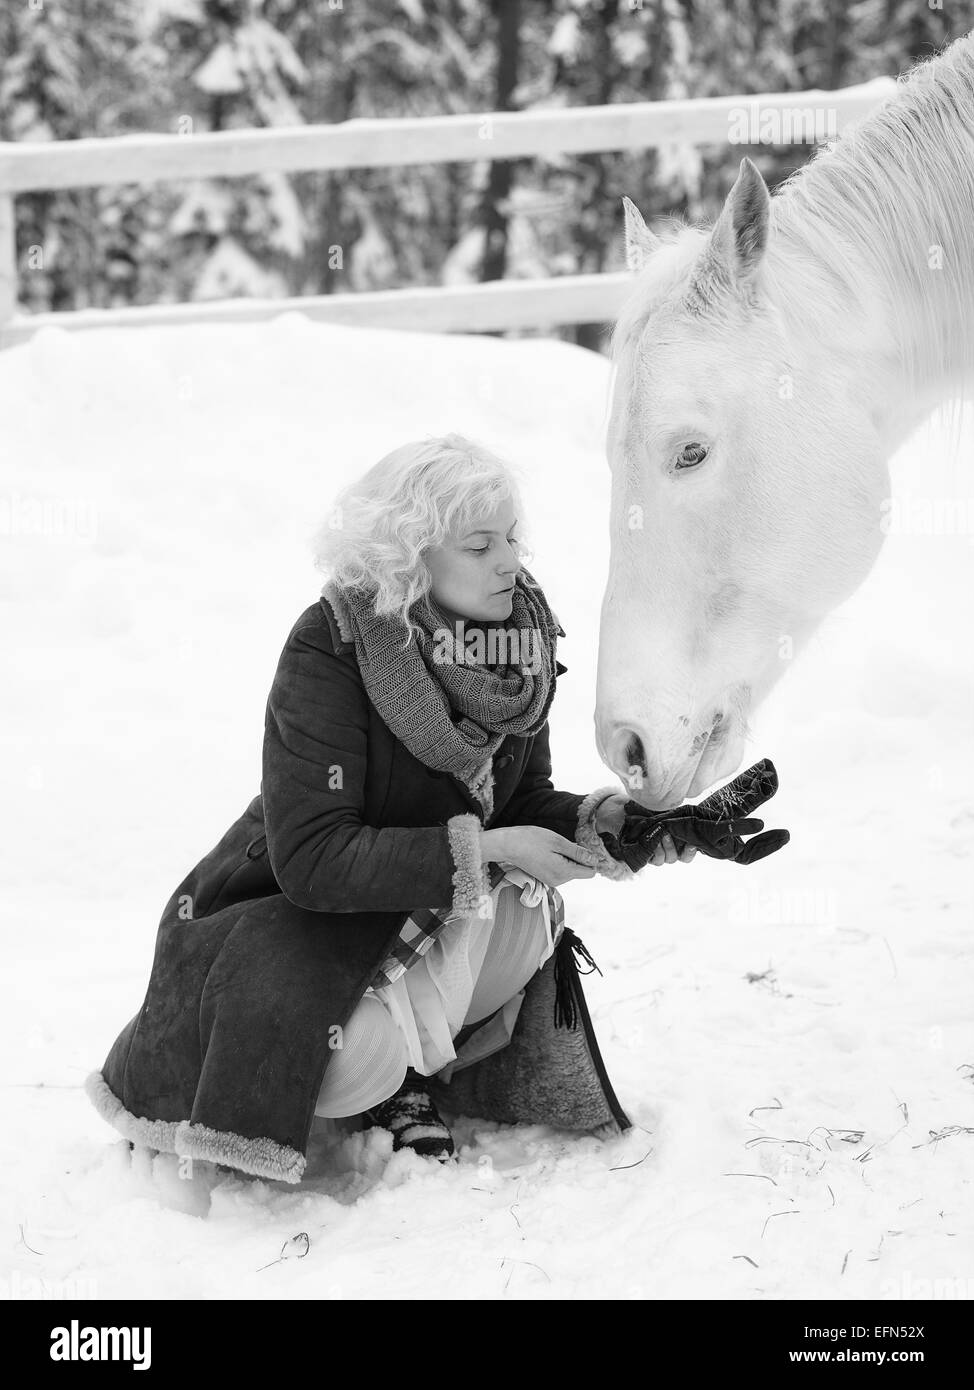 Attraktive blonde Frau speist ein weißes Pferd, bewölkten Wintertag, schwarz / weiß Bild Stockfoto